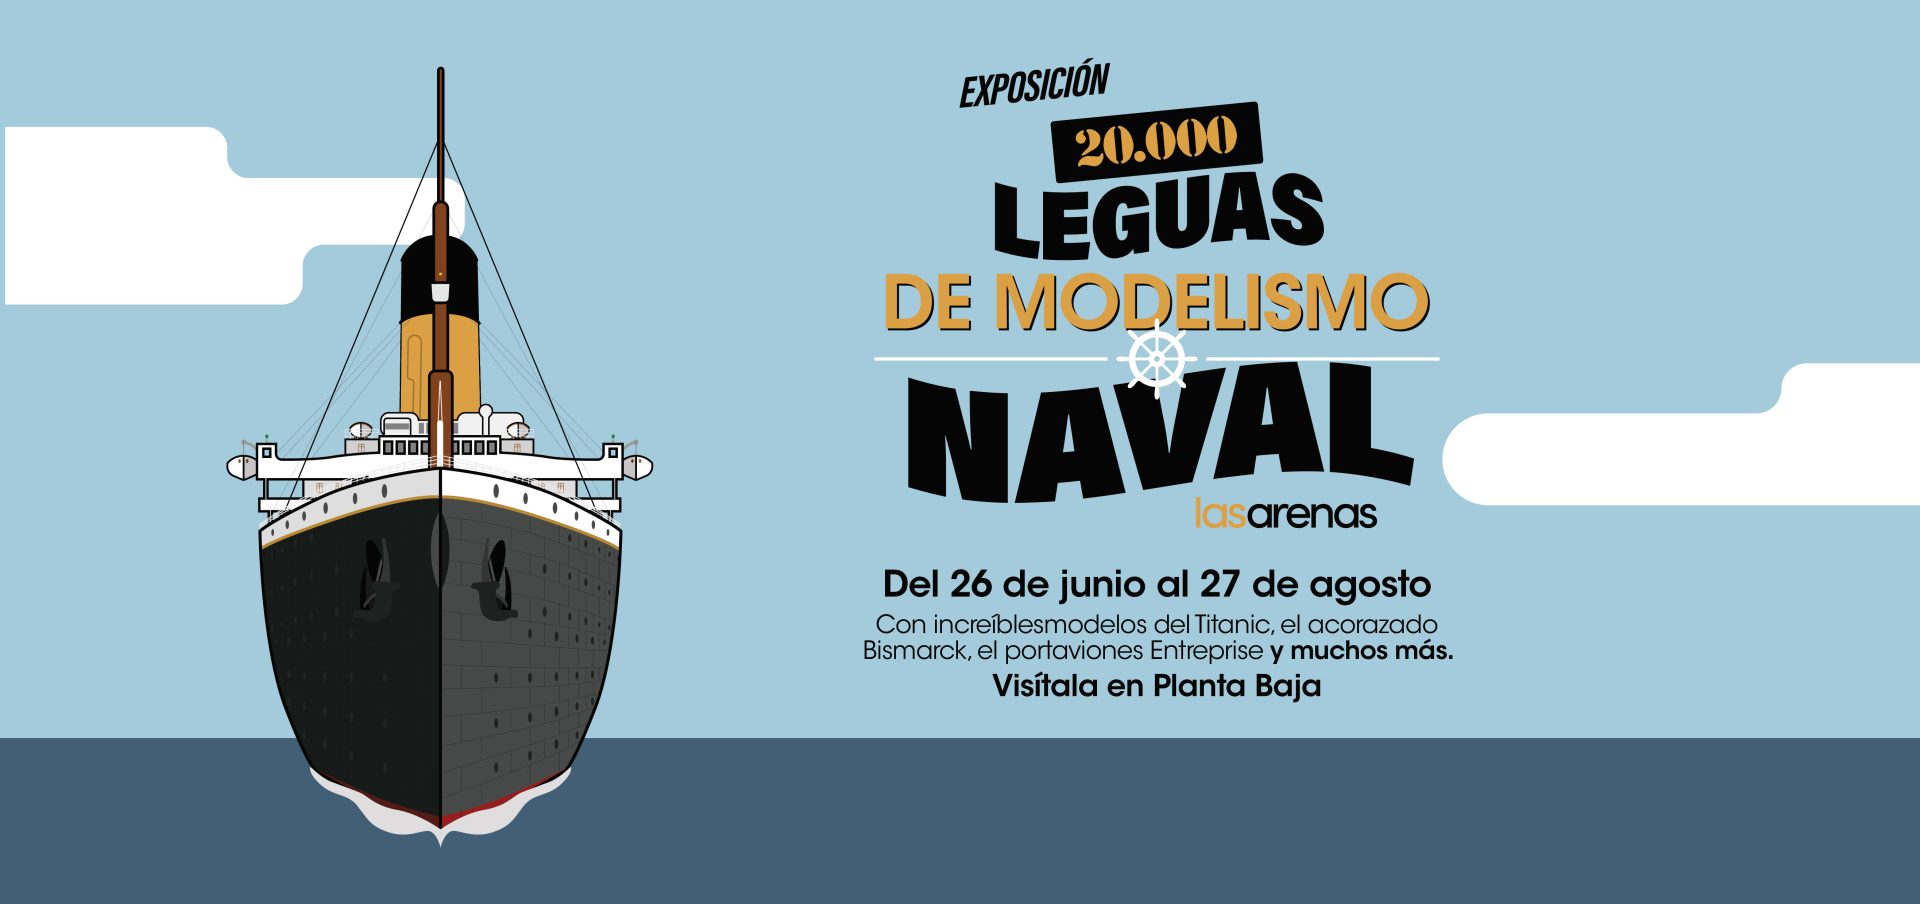 Exposición | 20.000 Leguas de Modelismo Naval - Arenas - Disfrutarlo es muy